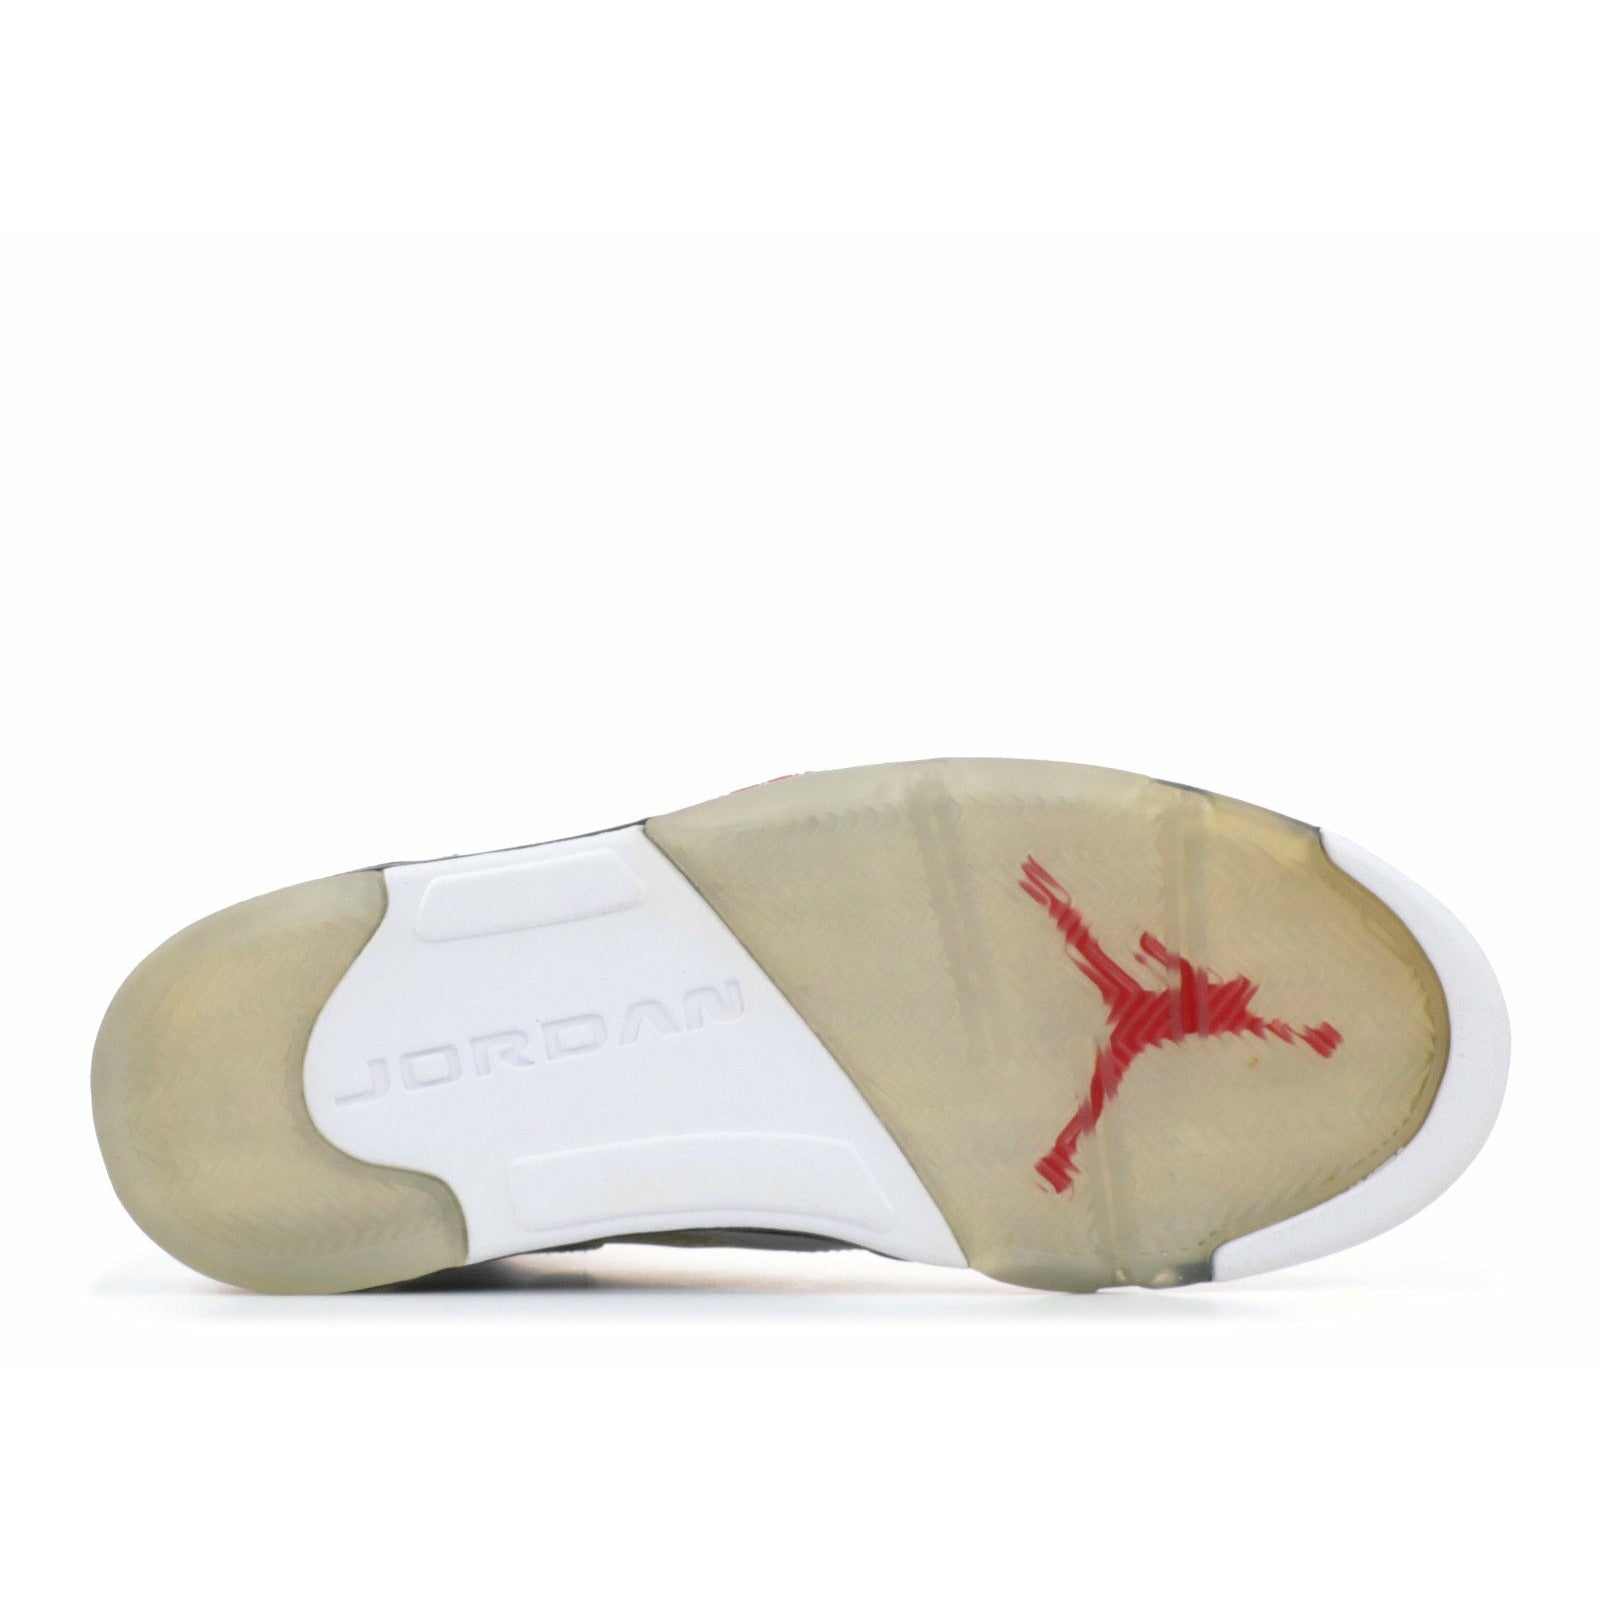 Air Jordan 5 Retro &Olympic& - 136027-103 - Size 9.5